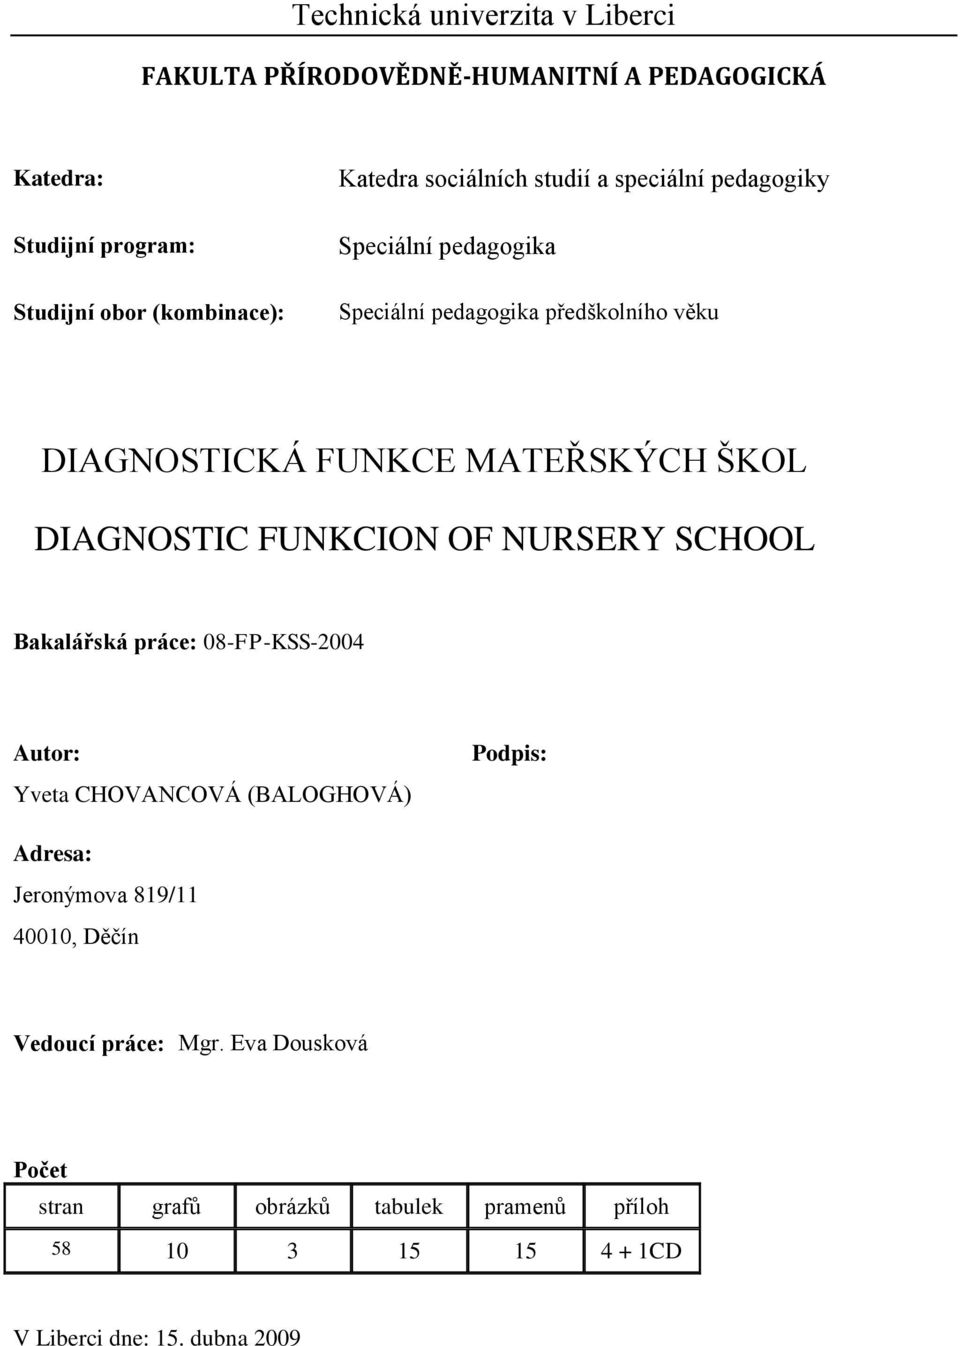 DIAGNOSTIC FUNKCION OF NURSERY SCHOOL Bakalářská práce: 08-FP-KSS-2004 Autor: Yveta CHOVANCOVÁ (BALOGHOVÁ) Podpis: Adresa: Jeronýmova 819/11